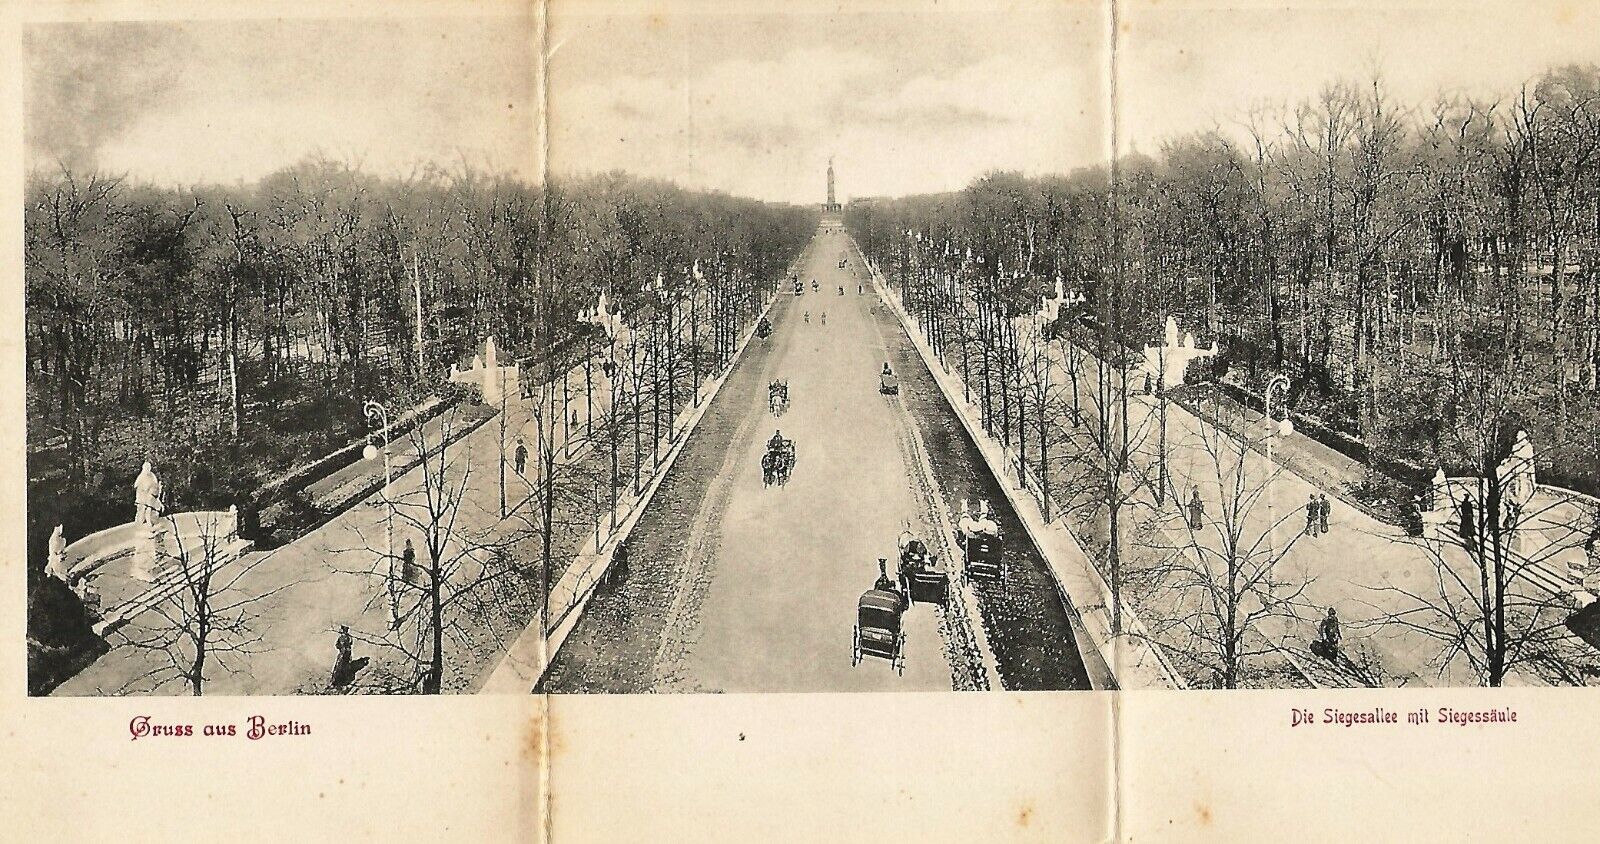 Postcard Germany Berlin Panoramic 1903 Die Siegesallee mit Siegessaule Victory 